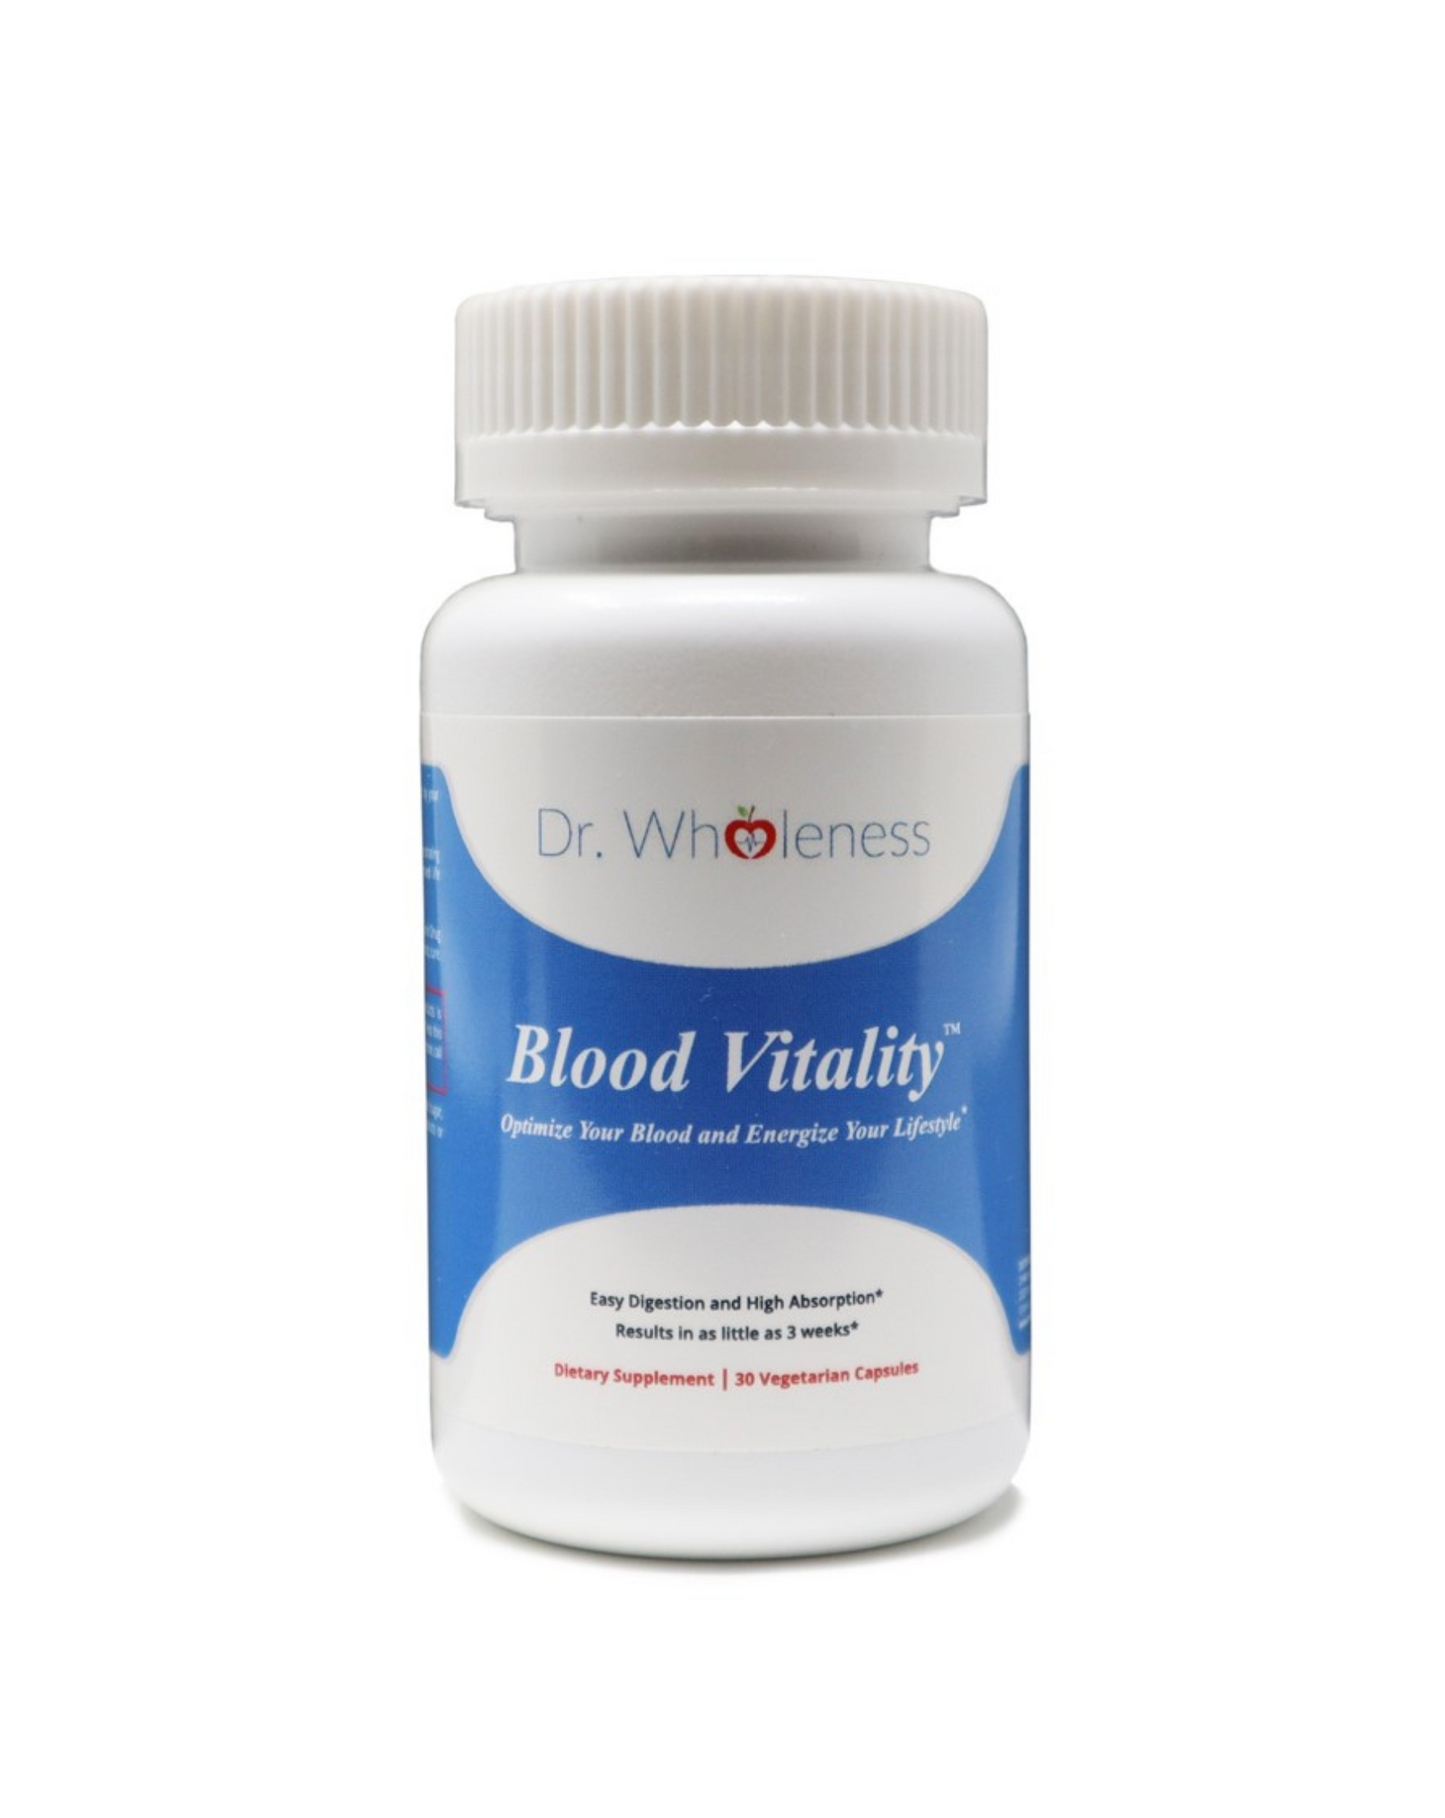 Blood Vitality supplement to raise iron